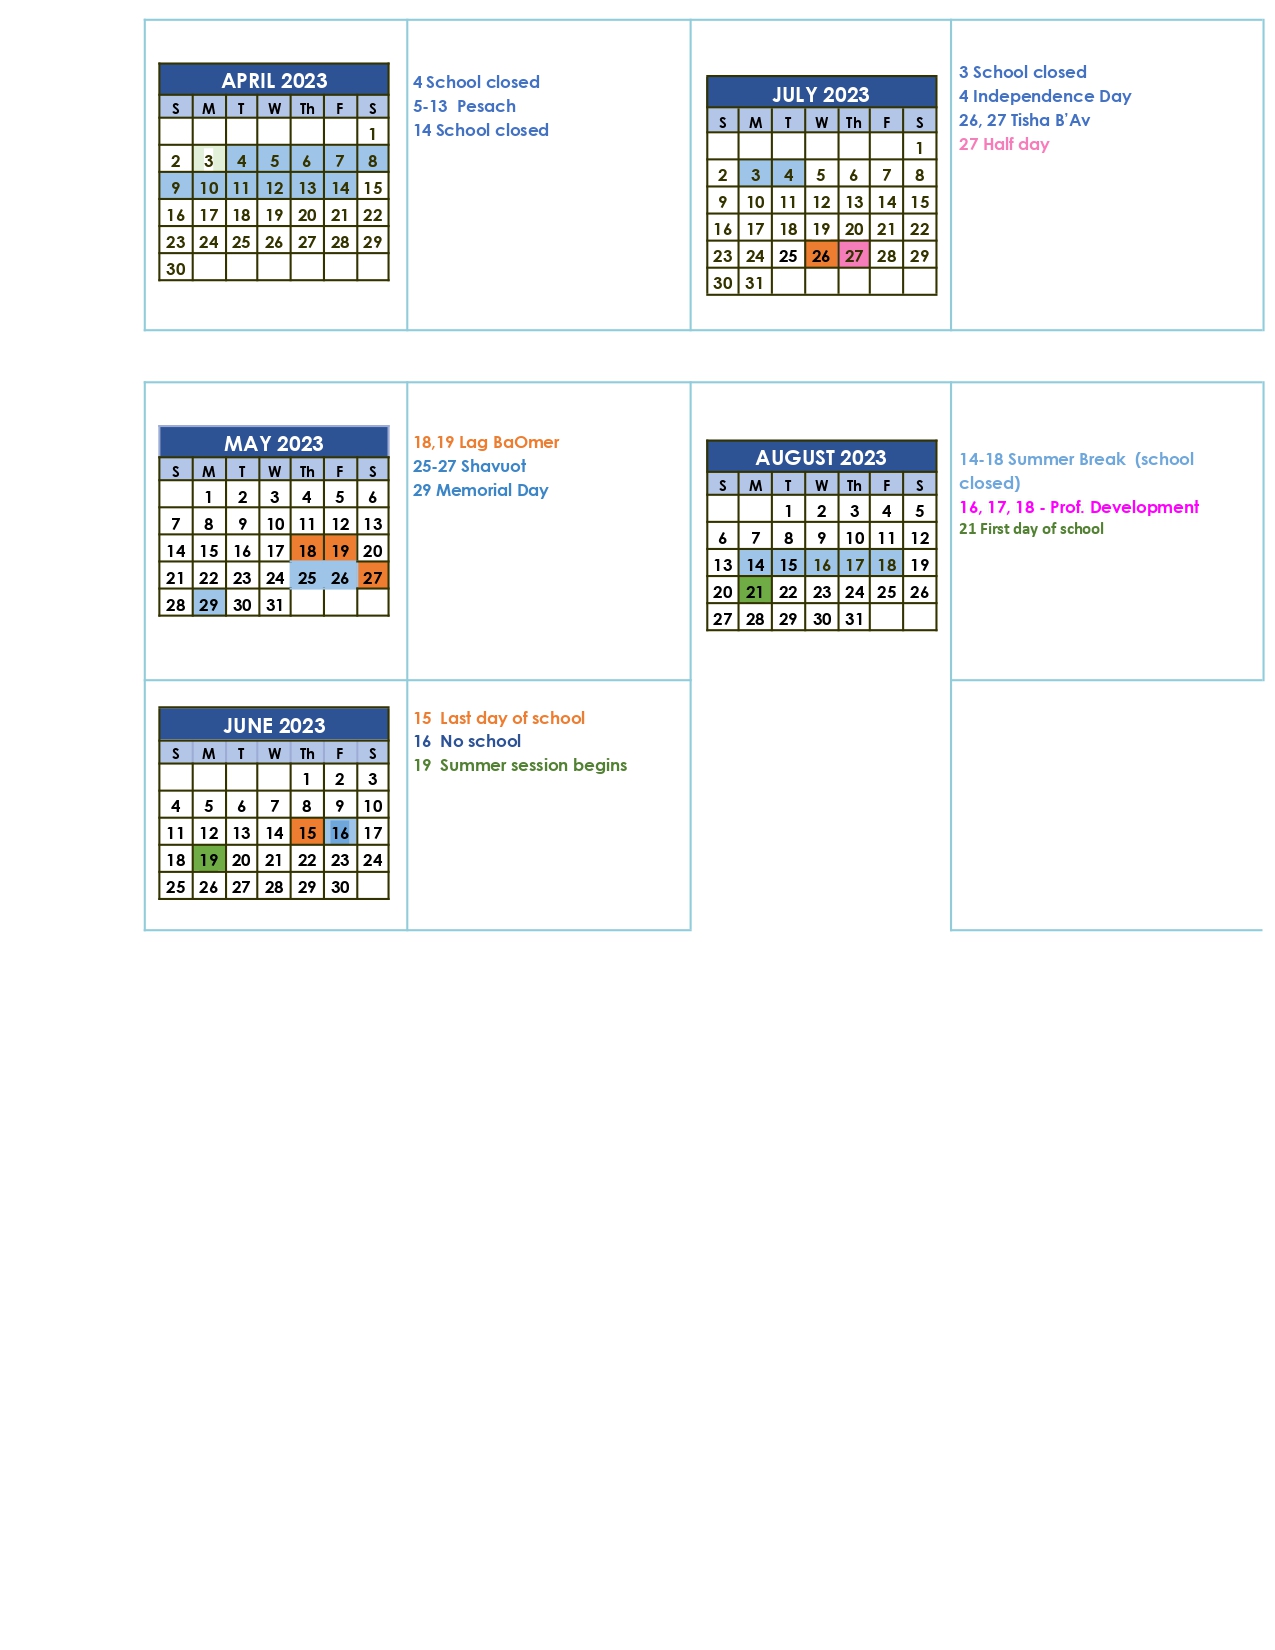 calendar-the-shalom-school-website